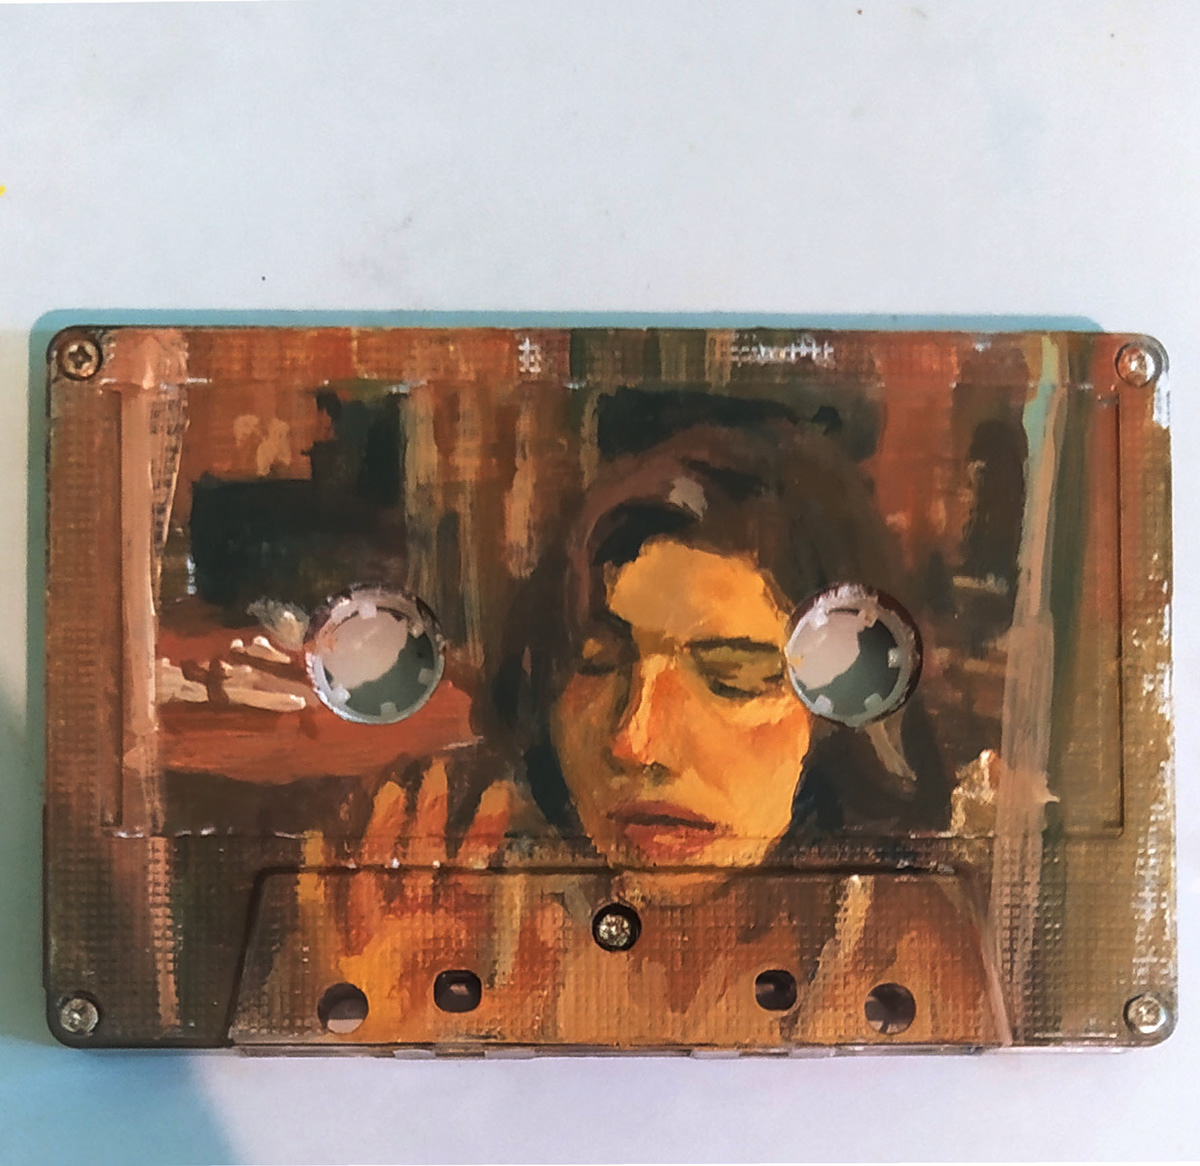 cassette tapes fanart gouache painting TheDoubleLifeofVeronique vintage